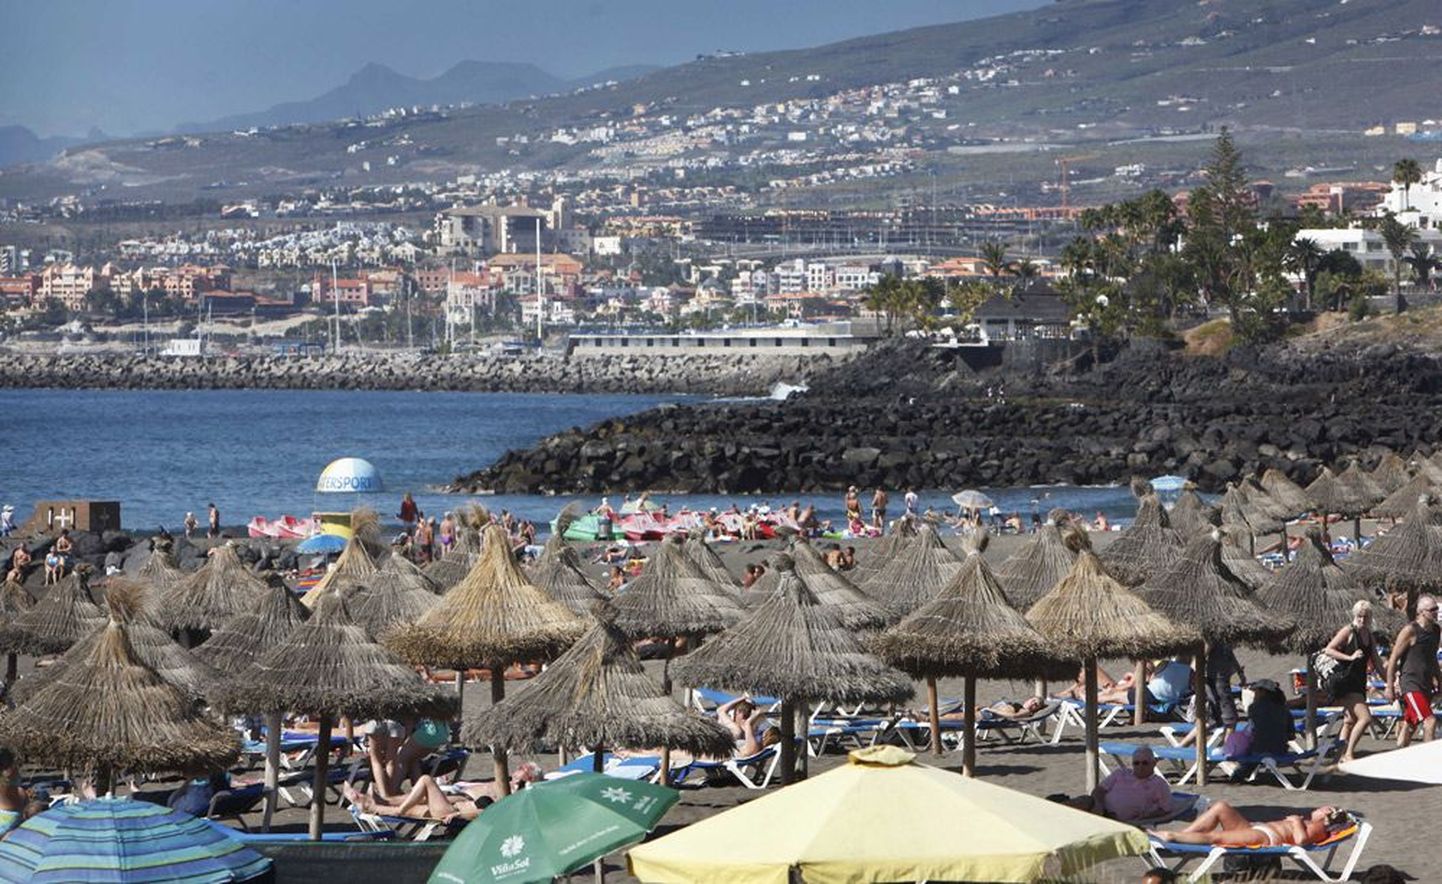 Kunagisest vaiksest kalurikülast Los Cristianosest on Tenerifel saanud üks peamisi turismilinnu, kus vee ääres võib kaluripaatide asemel leida päevitavad turistid.